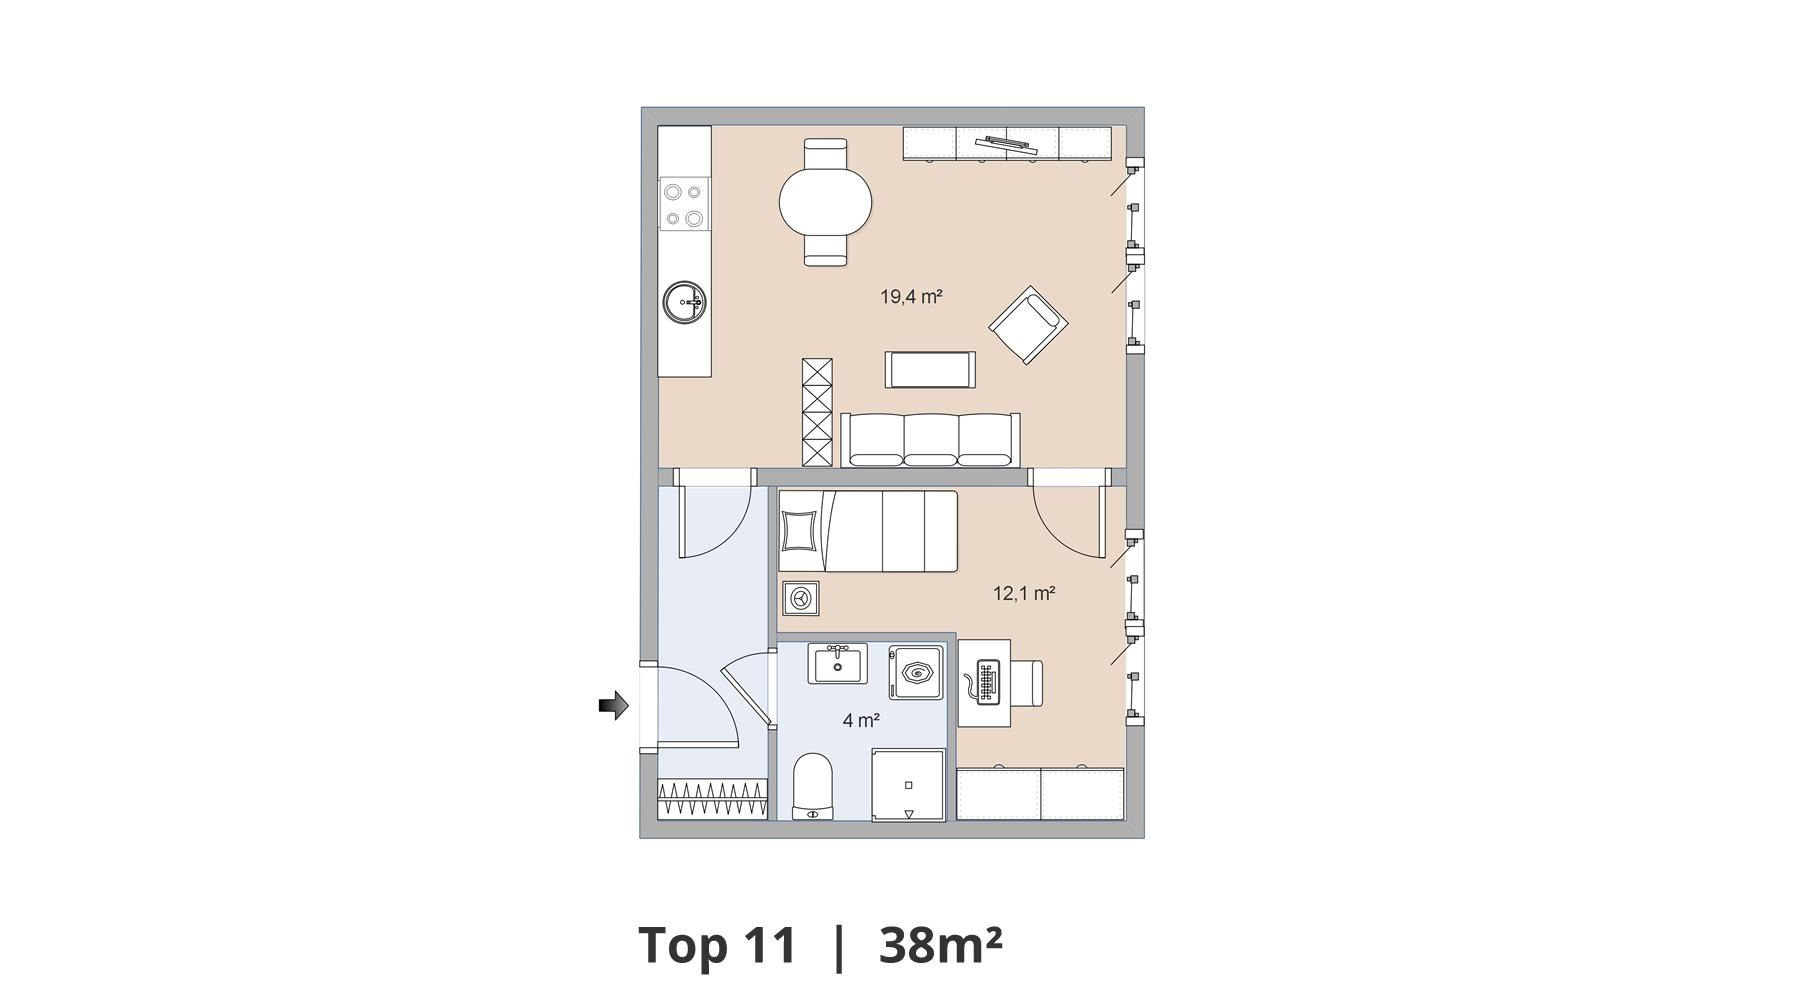 Stadtnahes Wohnen pur: 2-Zimmer-Wohnung in ruhiger Lage mit vollausgestatteter Wohnküche